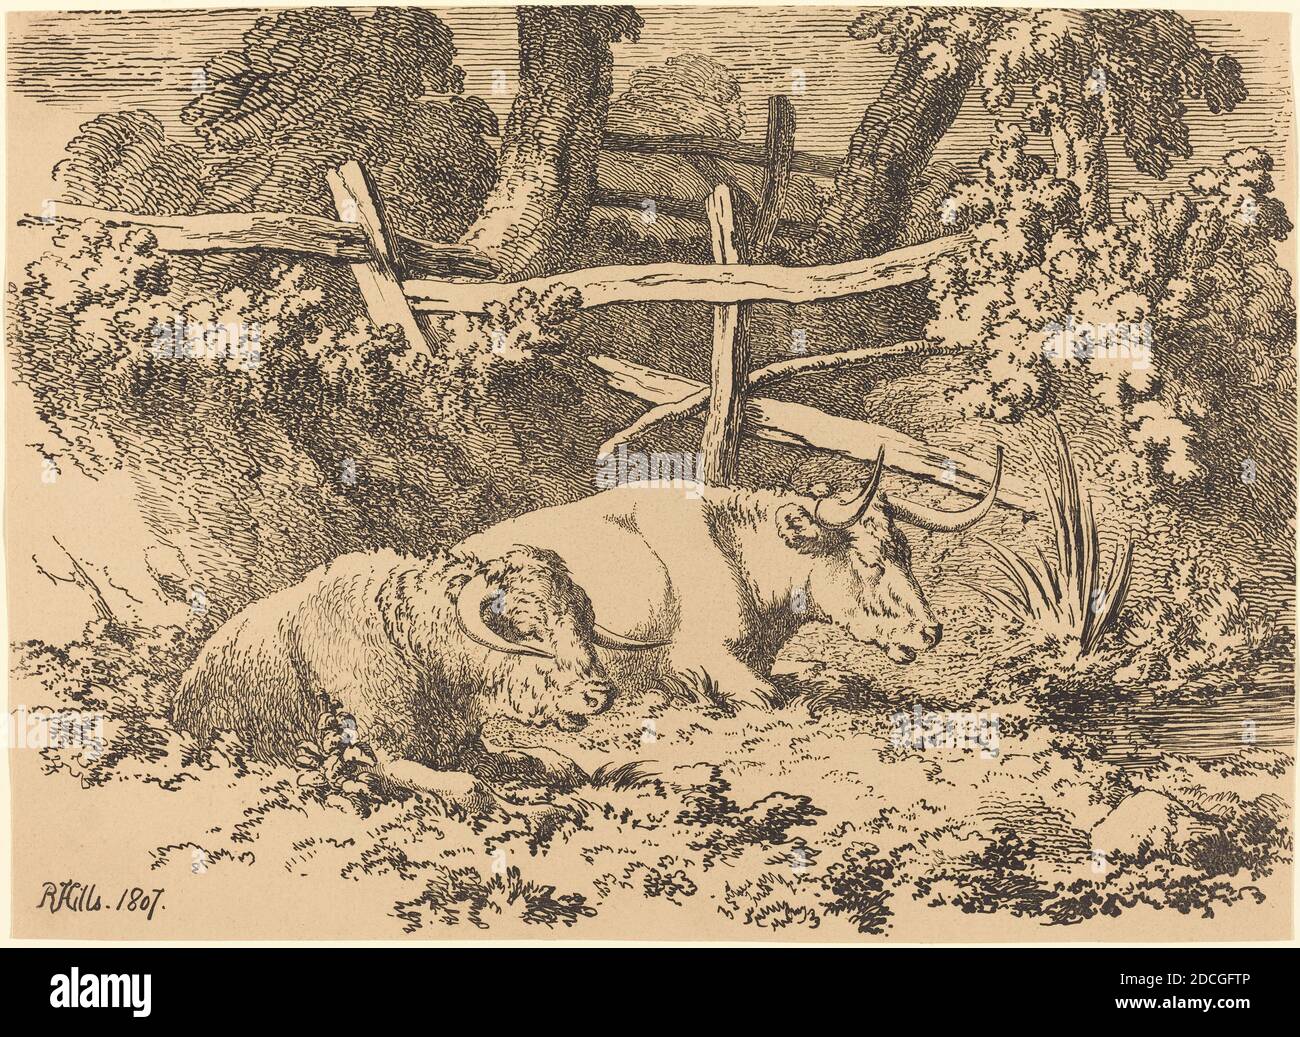 Robert Hills, (artista), British, 1769 - 1844, bestiame che riposa, esemplari di poliautografia, (serie), 1807, litografia a penna e a tusche Foto Stock